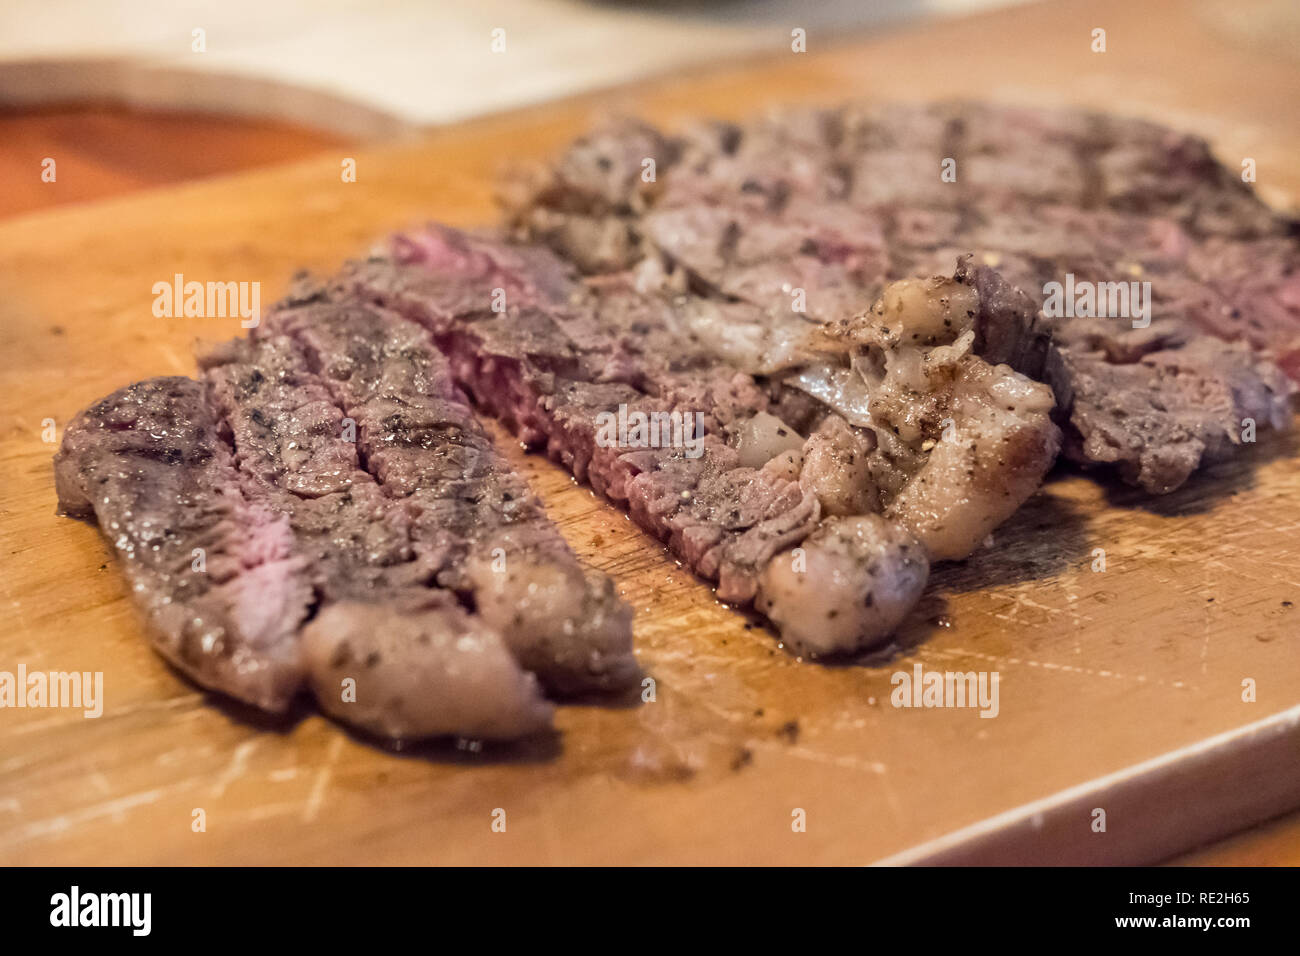 Mezzo raro la carne sulla piastra con salsa Foto Stock